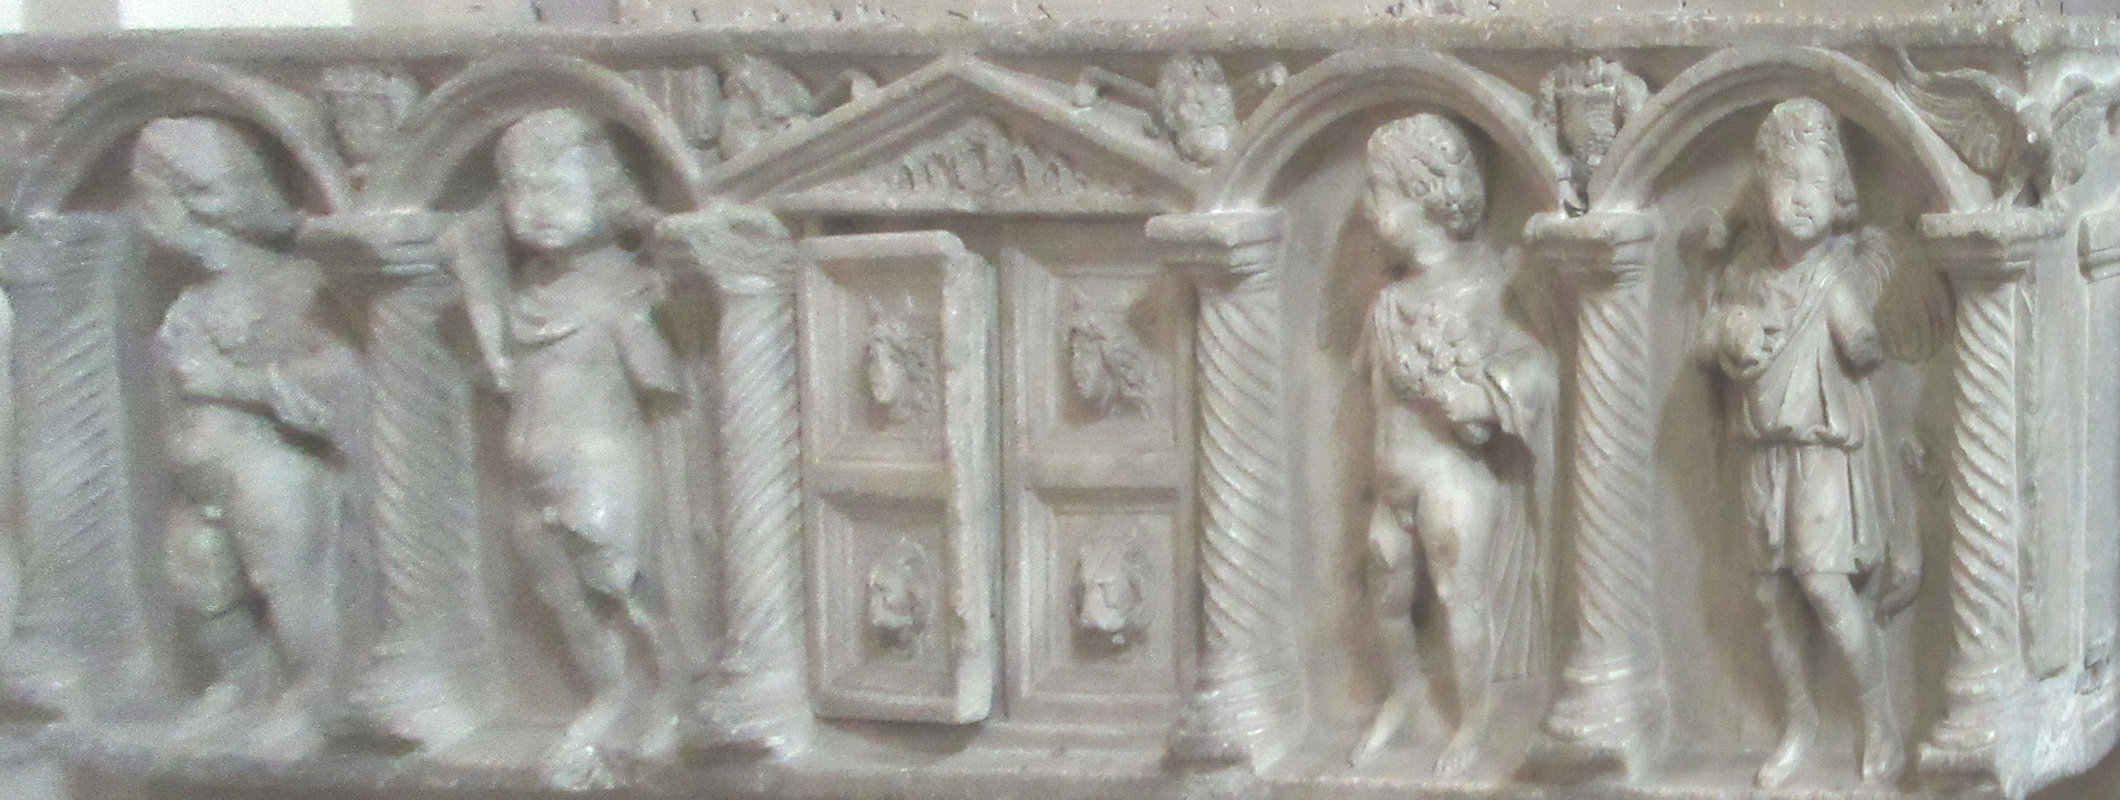 Front des römischen Sarkophags, in dem Birgitta zunächst bestattet wurde, in der Kirche San Lorenzo in Panisperna in Rom